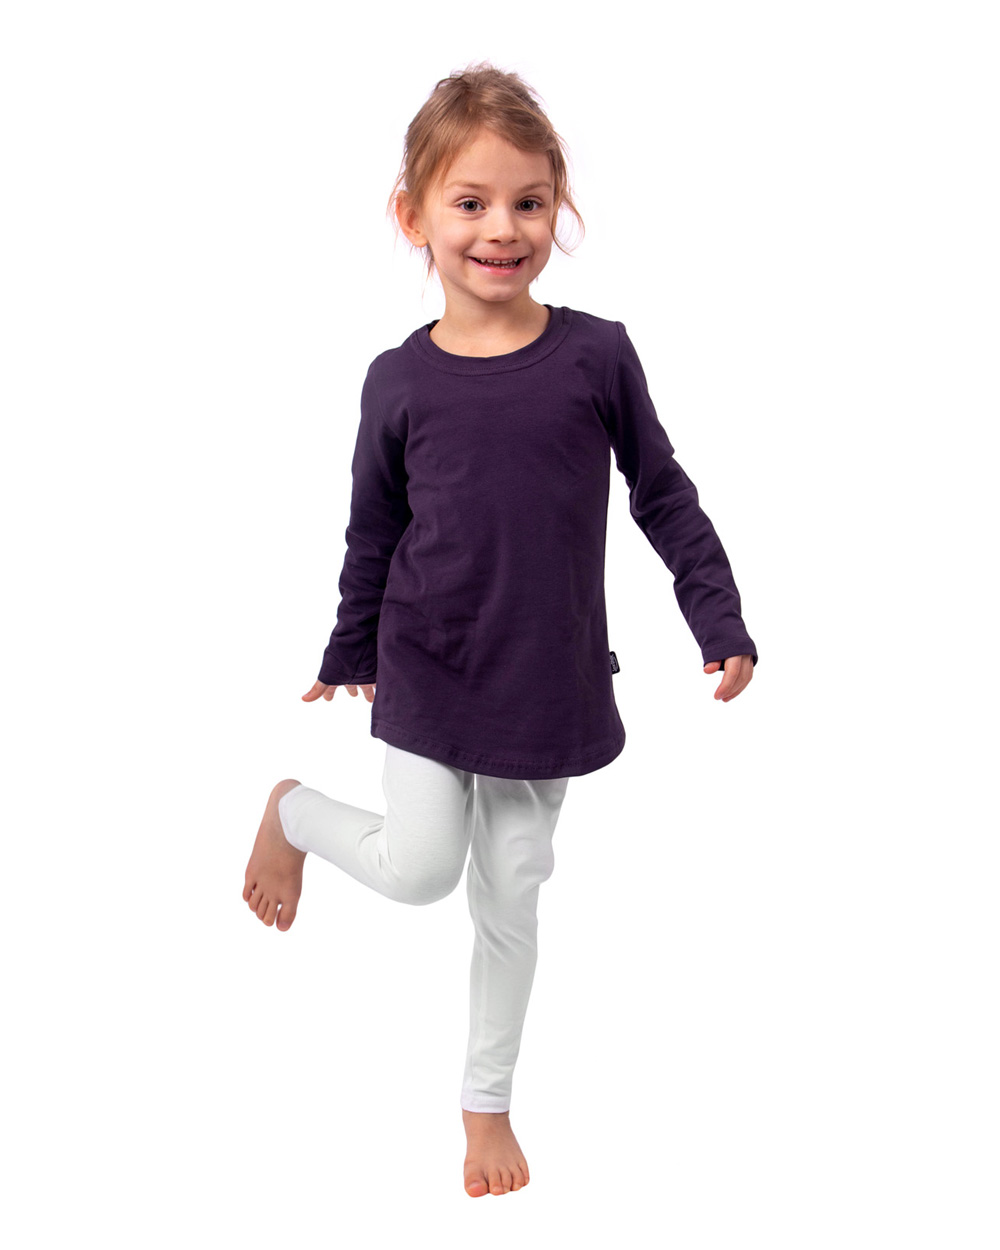 Children's leggings, white